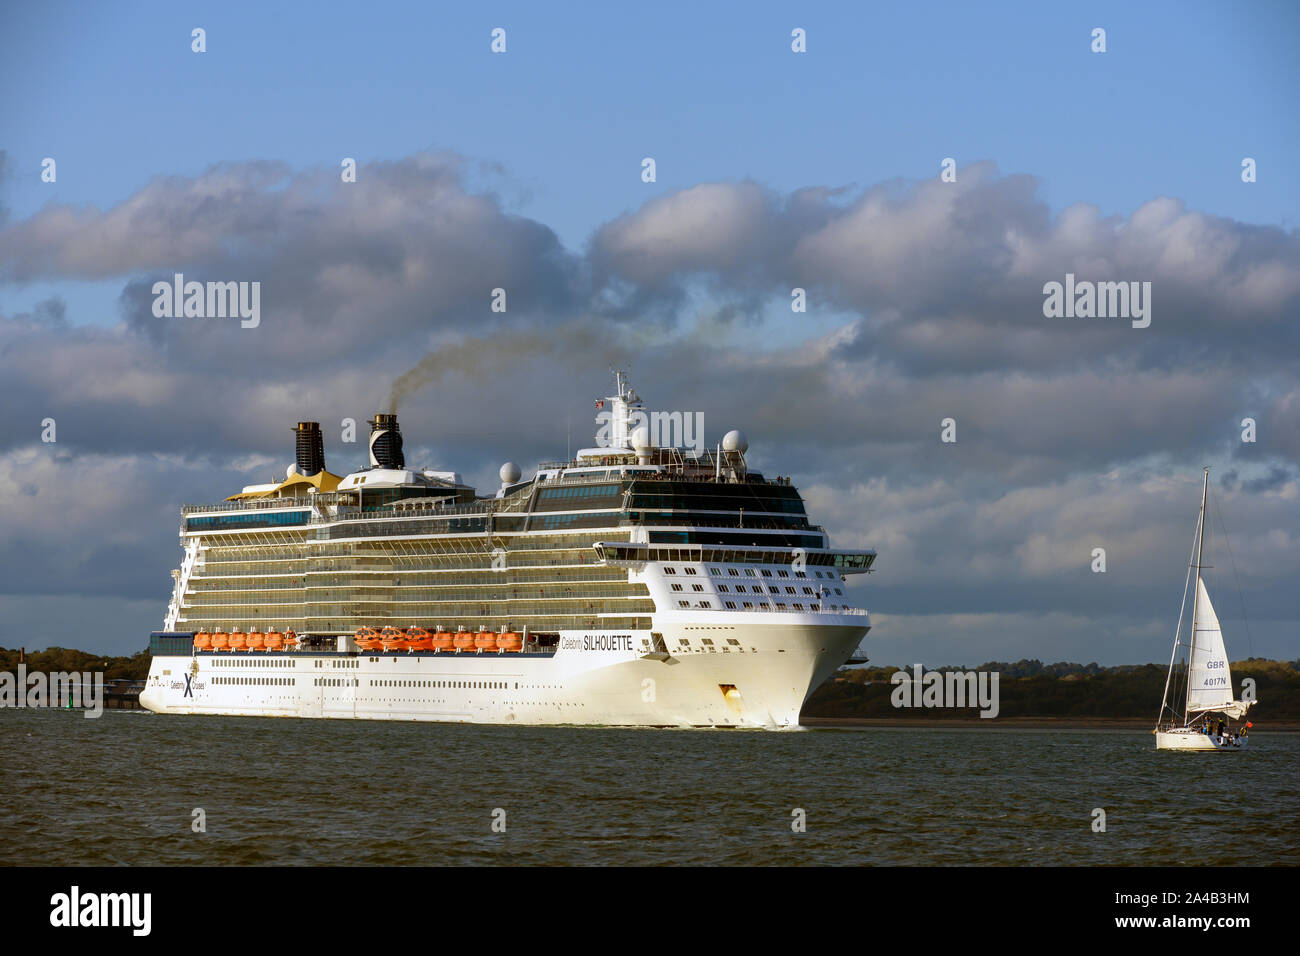 MV Celebrity Silhouette einer solistice-Klasse Kreuzfahrtschiff von Celebrity Cruises in Southampton, Southampton, Hampshire besaß. England, Großbritannien Stockfoto